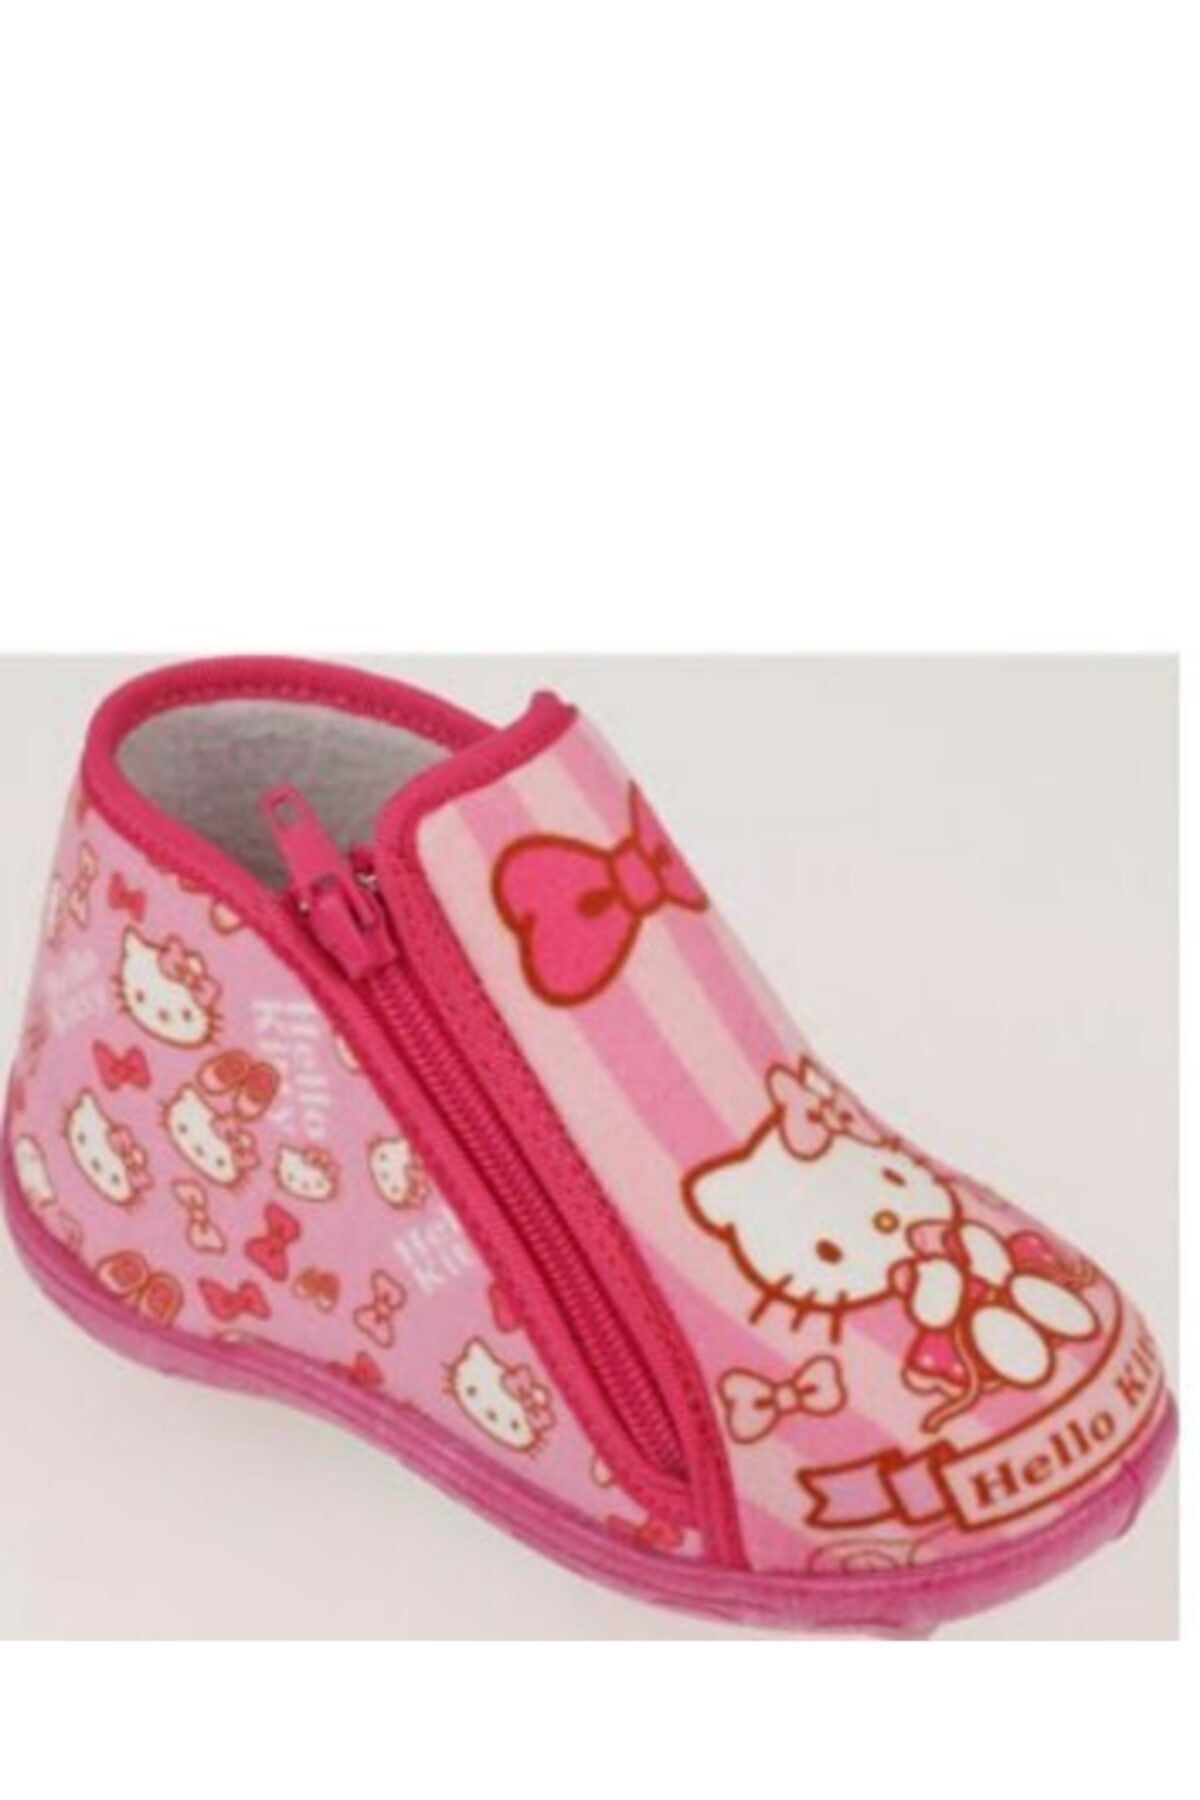 Hello Kitty Desenli Lisanslı Pembe Kız Çocuk Ev Ve Kreş Ayakkabısı